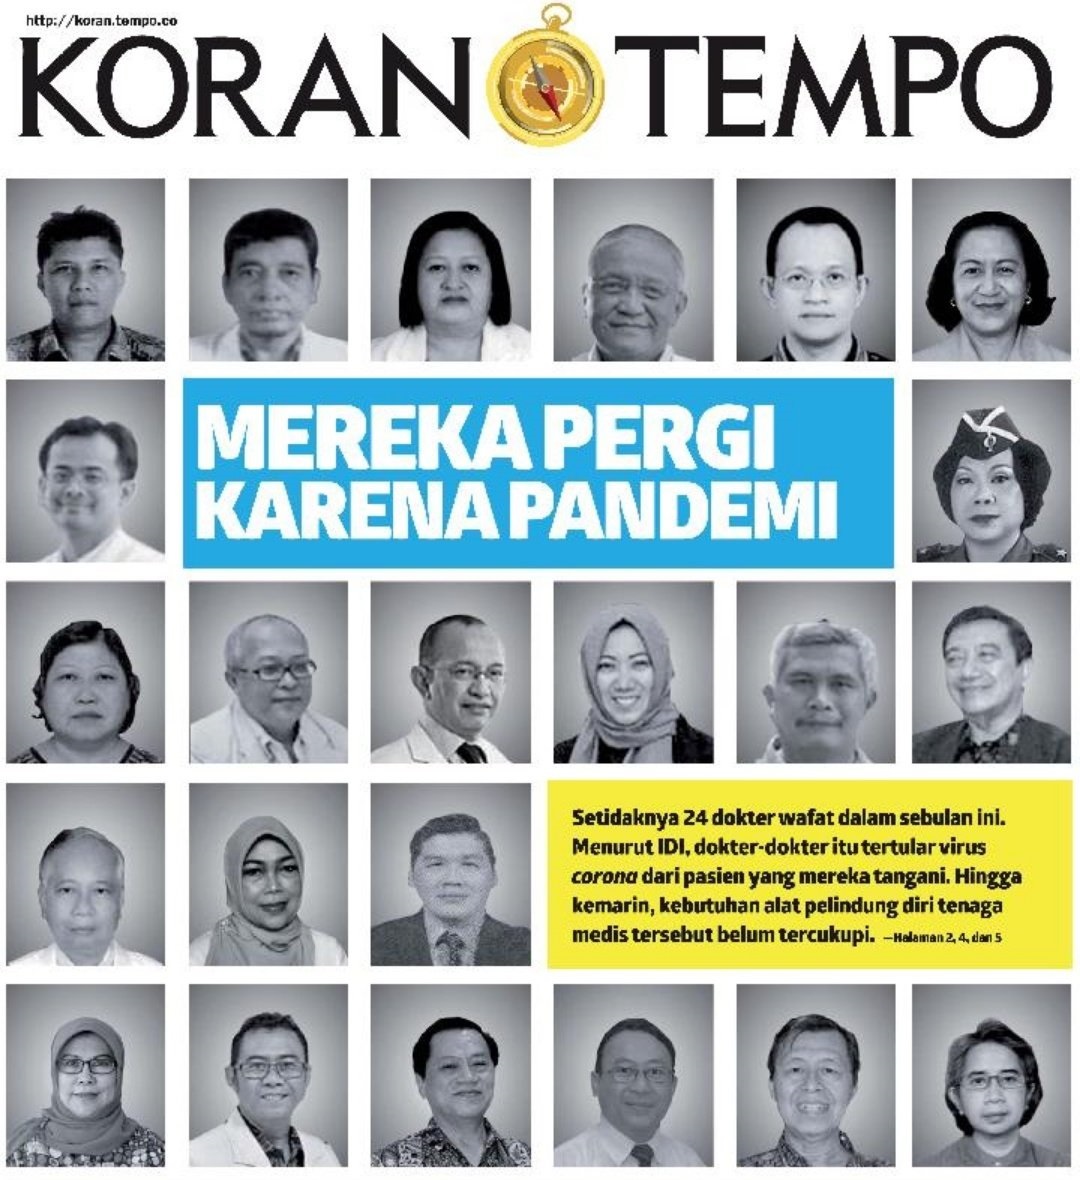 印尼媒体《Koran tempo》公布了印尼因冠病殉职的医生的照片。